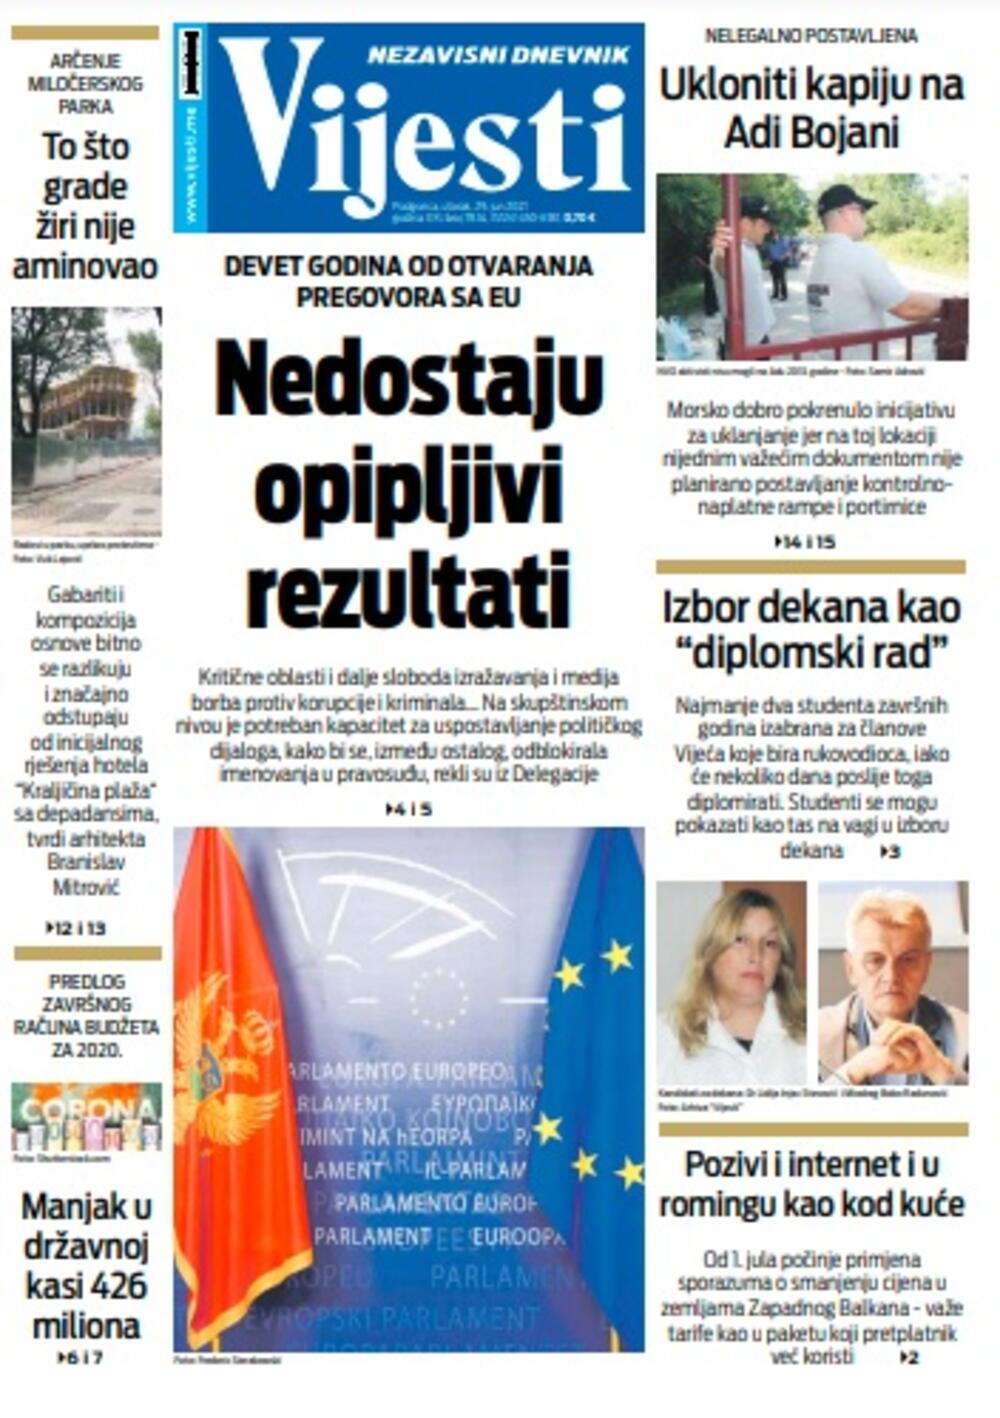 Naslovna strana Vijesti za utorak 29. jun 2021. godine, Foto: Vijesti